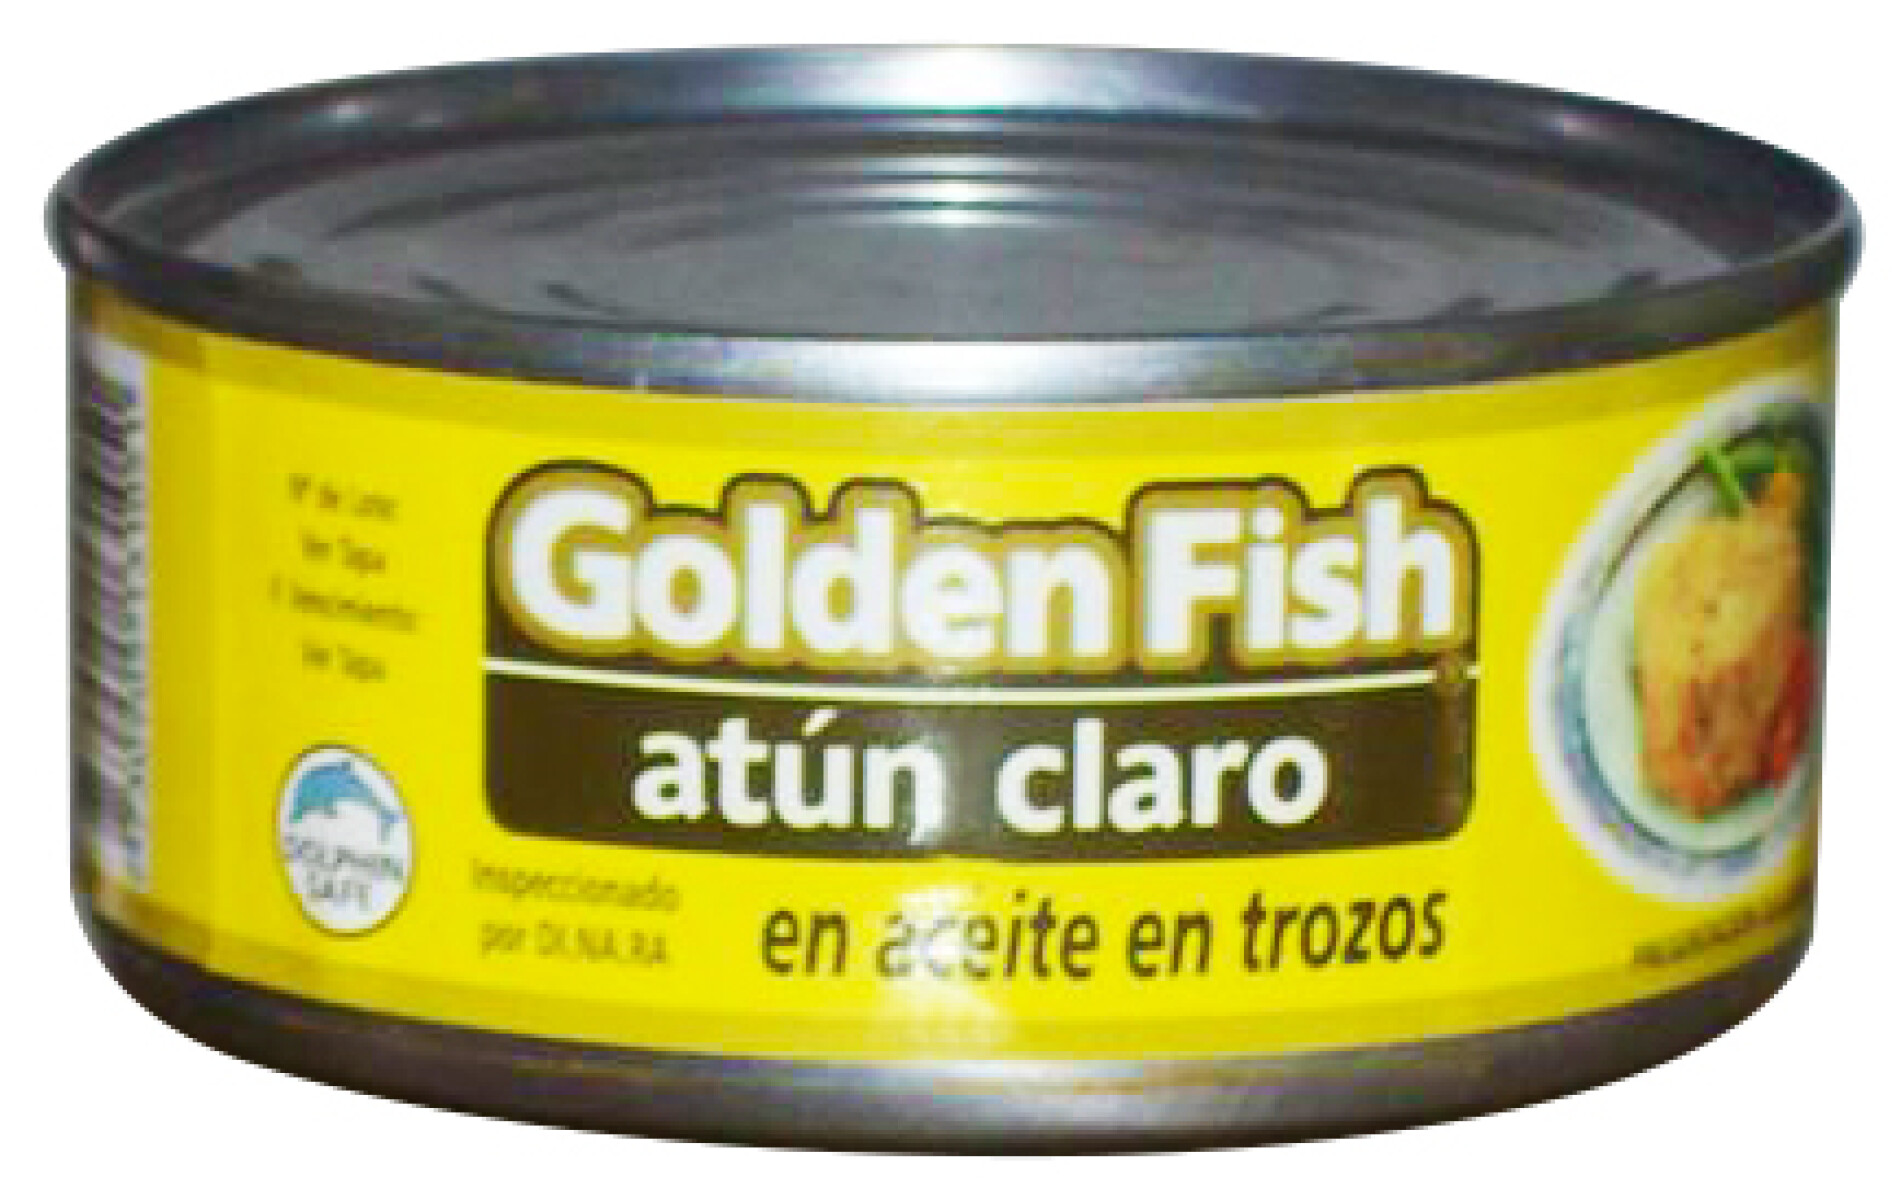 ATUN CLARO TROZOS ACEITE 170G GOLDEN FISH 